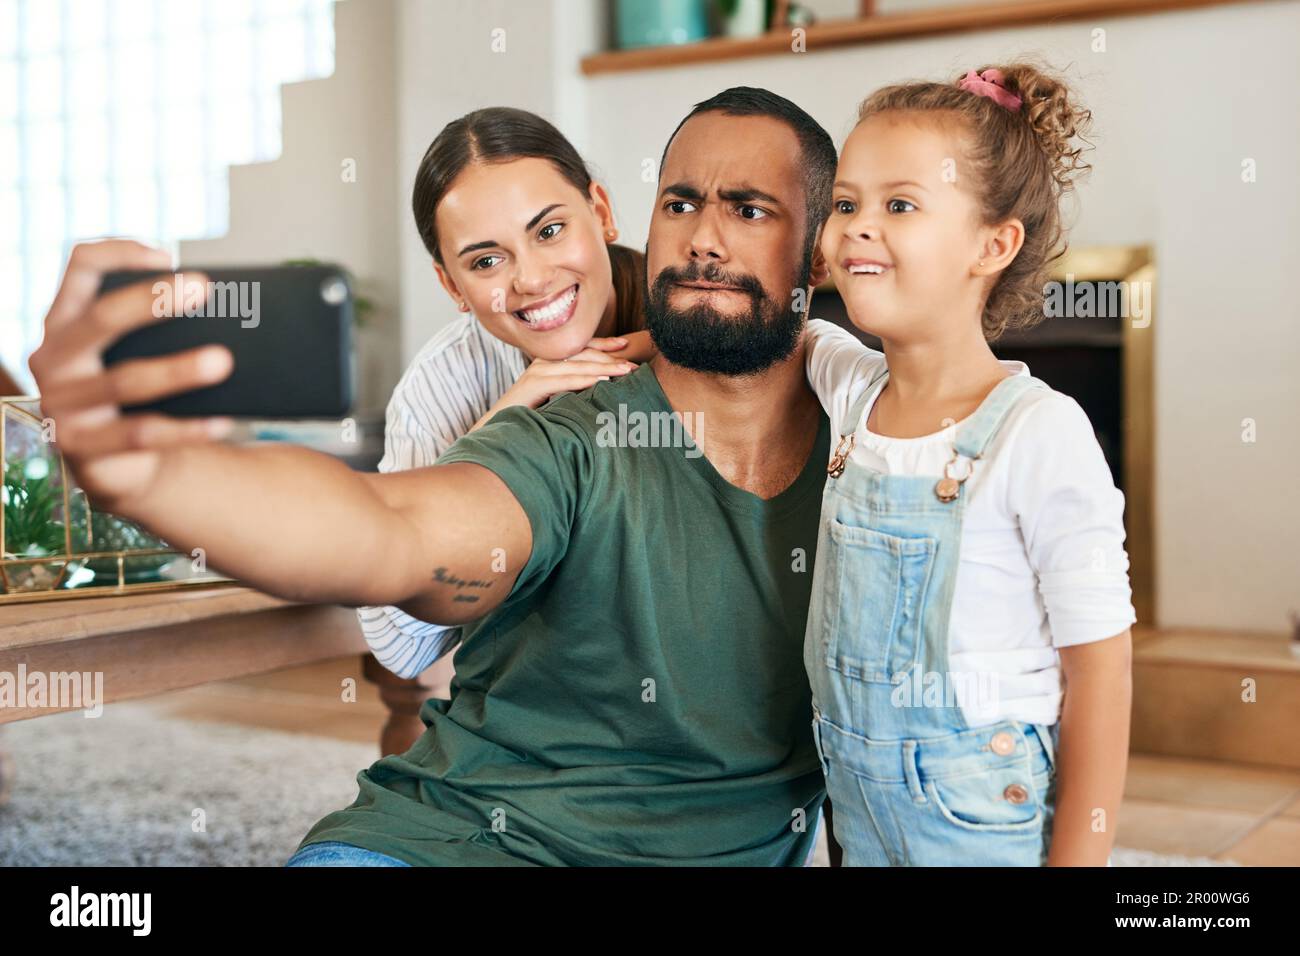 Glückliche, lustige Erinnerungen sind am besten zu schätzen. Eine glückliche Familie, die lustige Gesichter macht, während sie zu Hause Selfies macht. Stockfoto